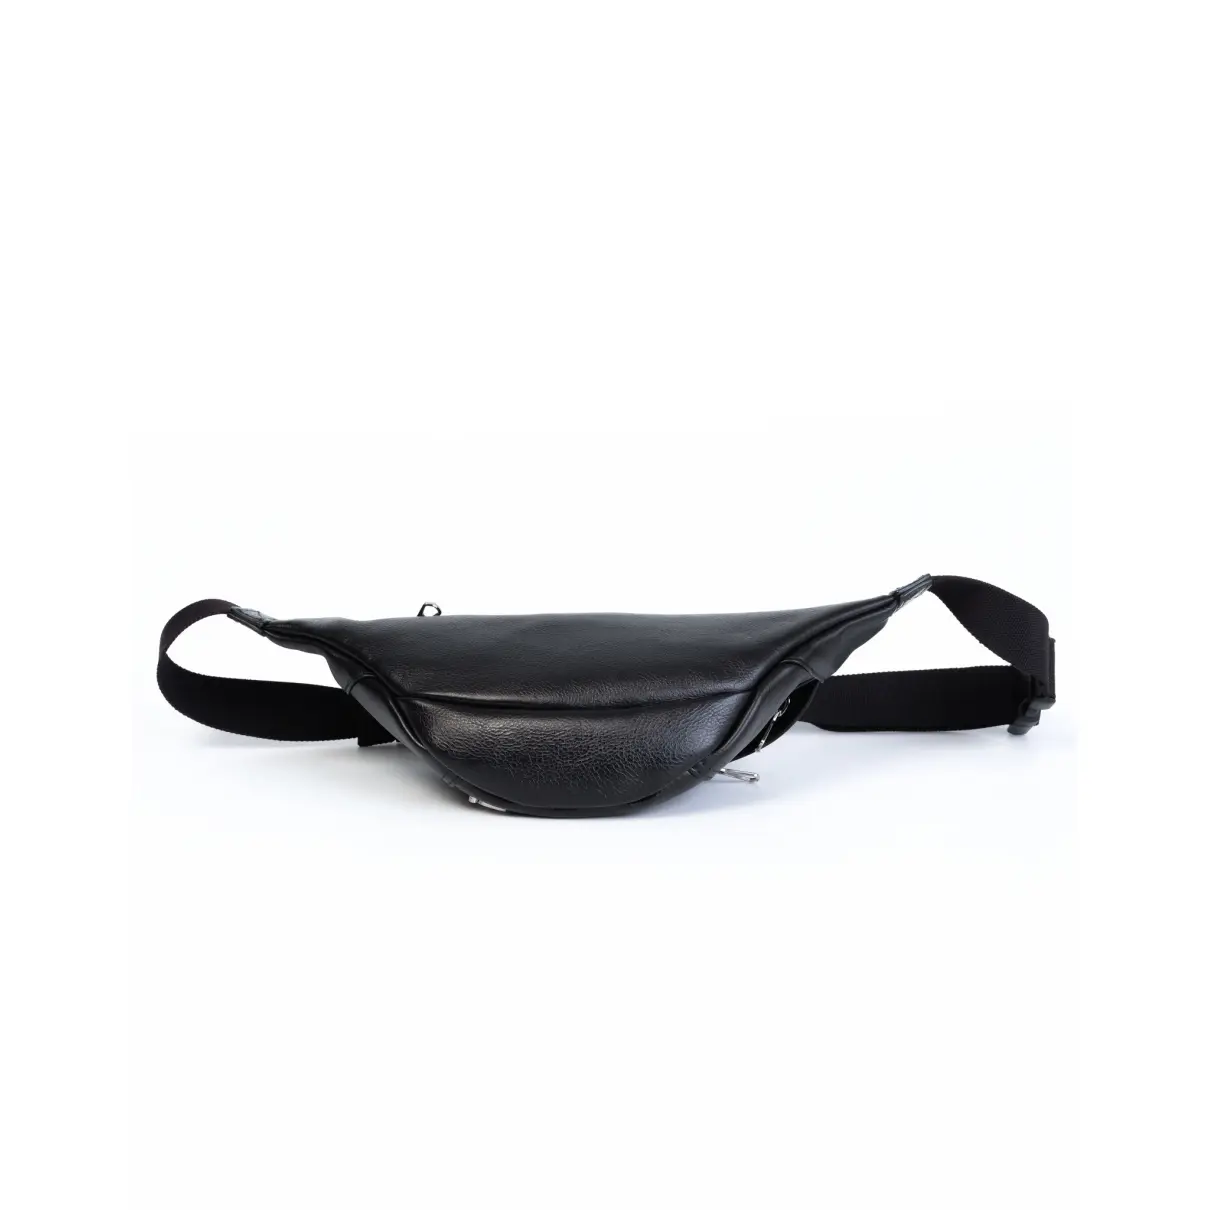 Buy Balenciaga Wheel leather clutch bag online